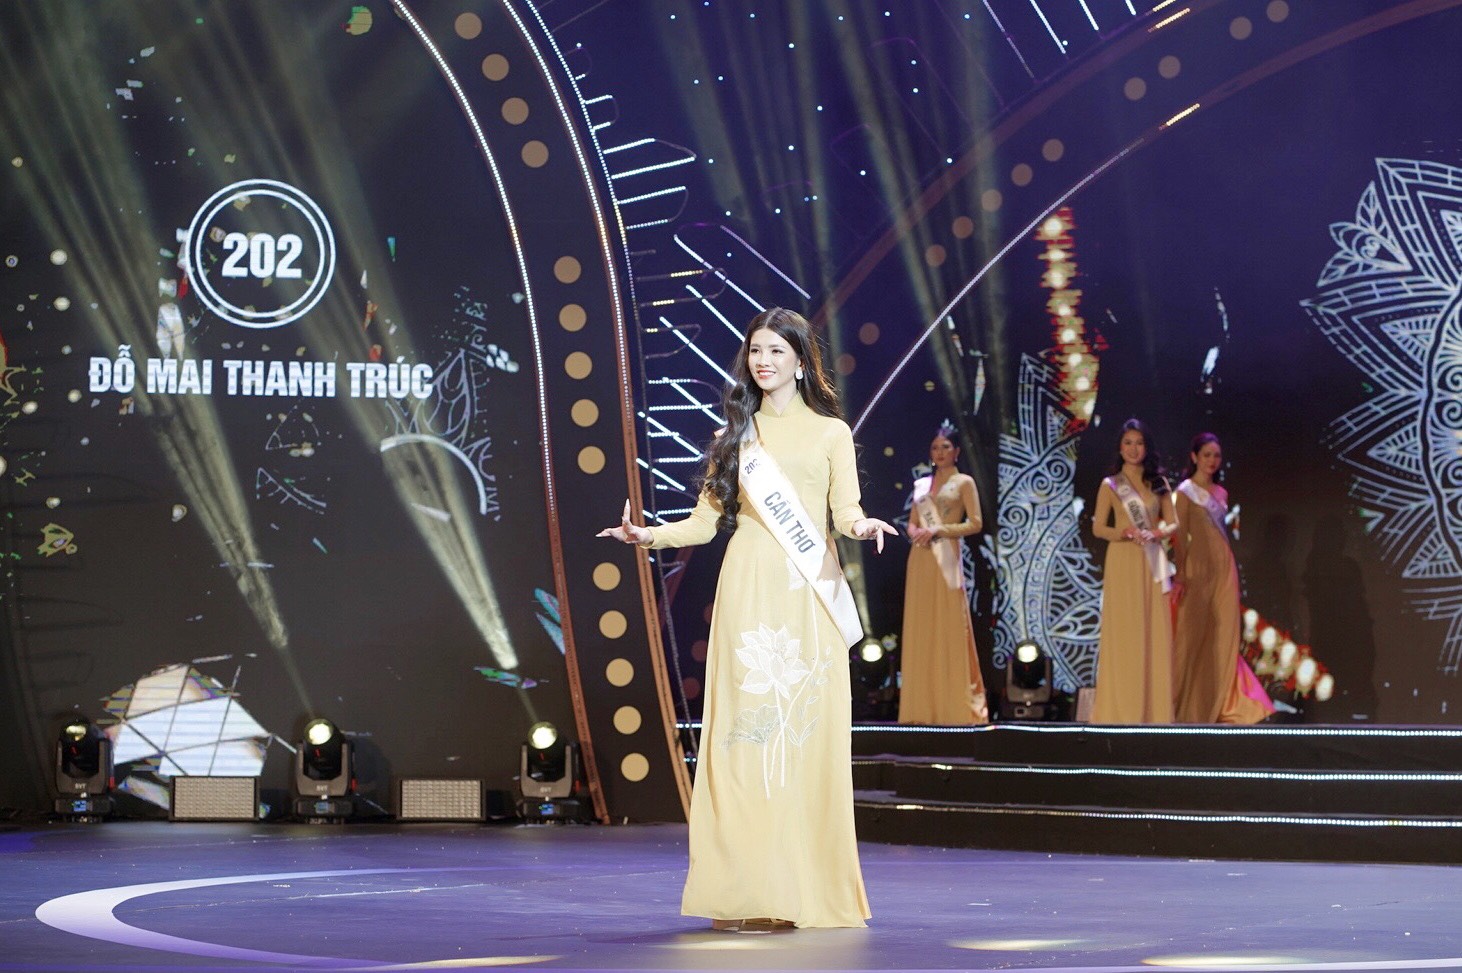 Bán kết Hoa hậu Du lịch Việt Nam 2022: 'Cháy’ hết mình trên sân khấu, 40 thí sinh xuất sắc đi tiếp vào đêm Chung kết - Ảnh 2.